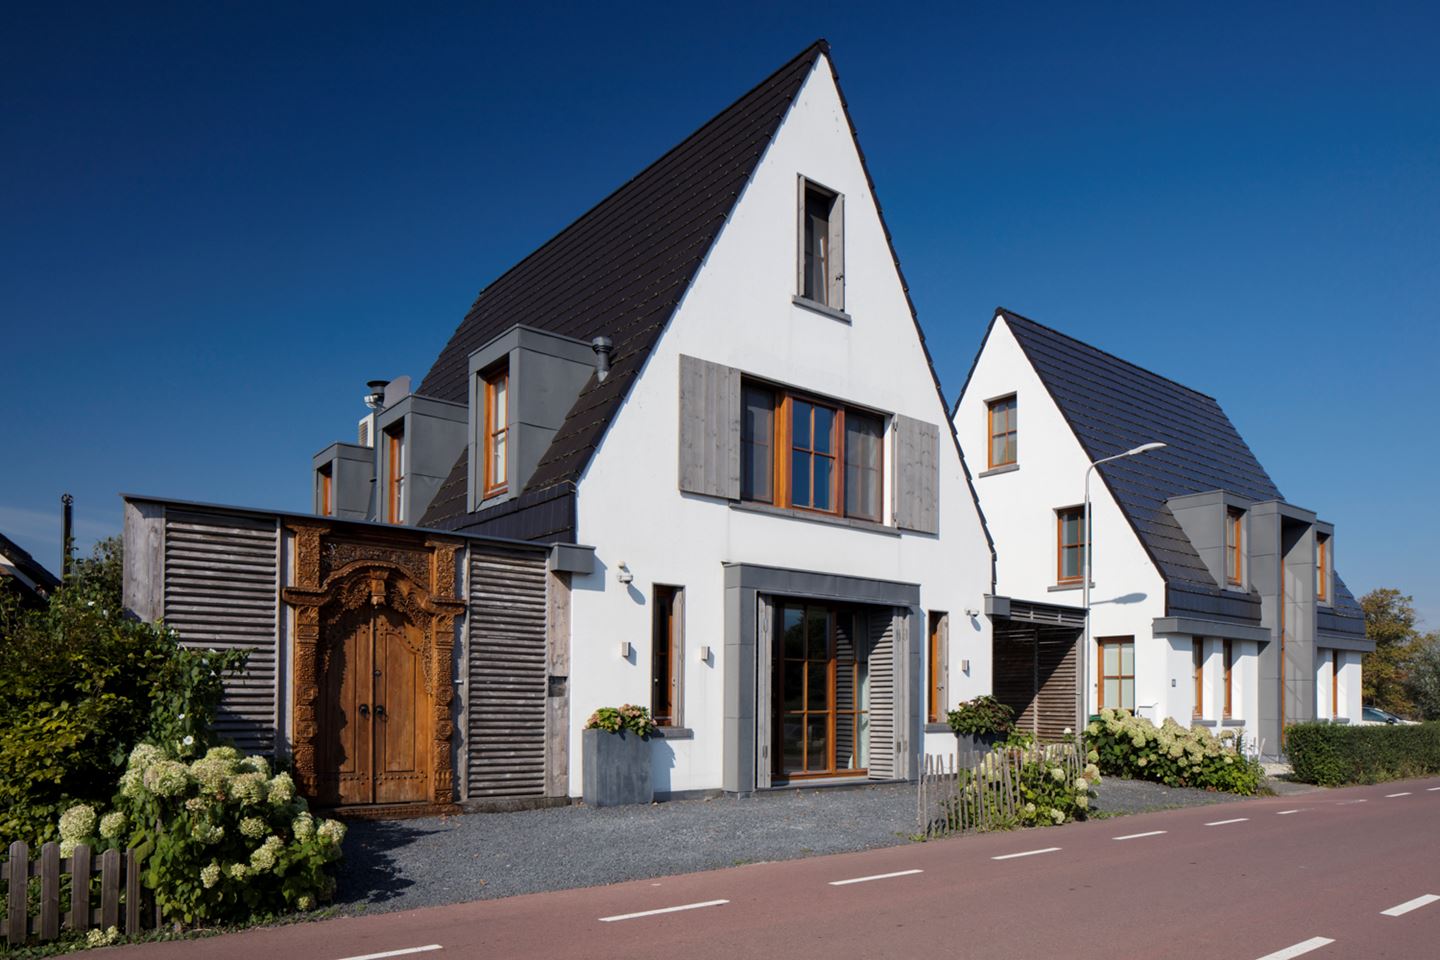 Голландский дом отзывы. Домик в голландском стиле. Фасад в голландском стиле. Фасад дома в голландском стиле. Голландский стиль в архитектуре.